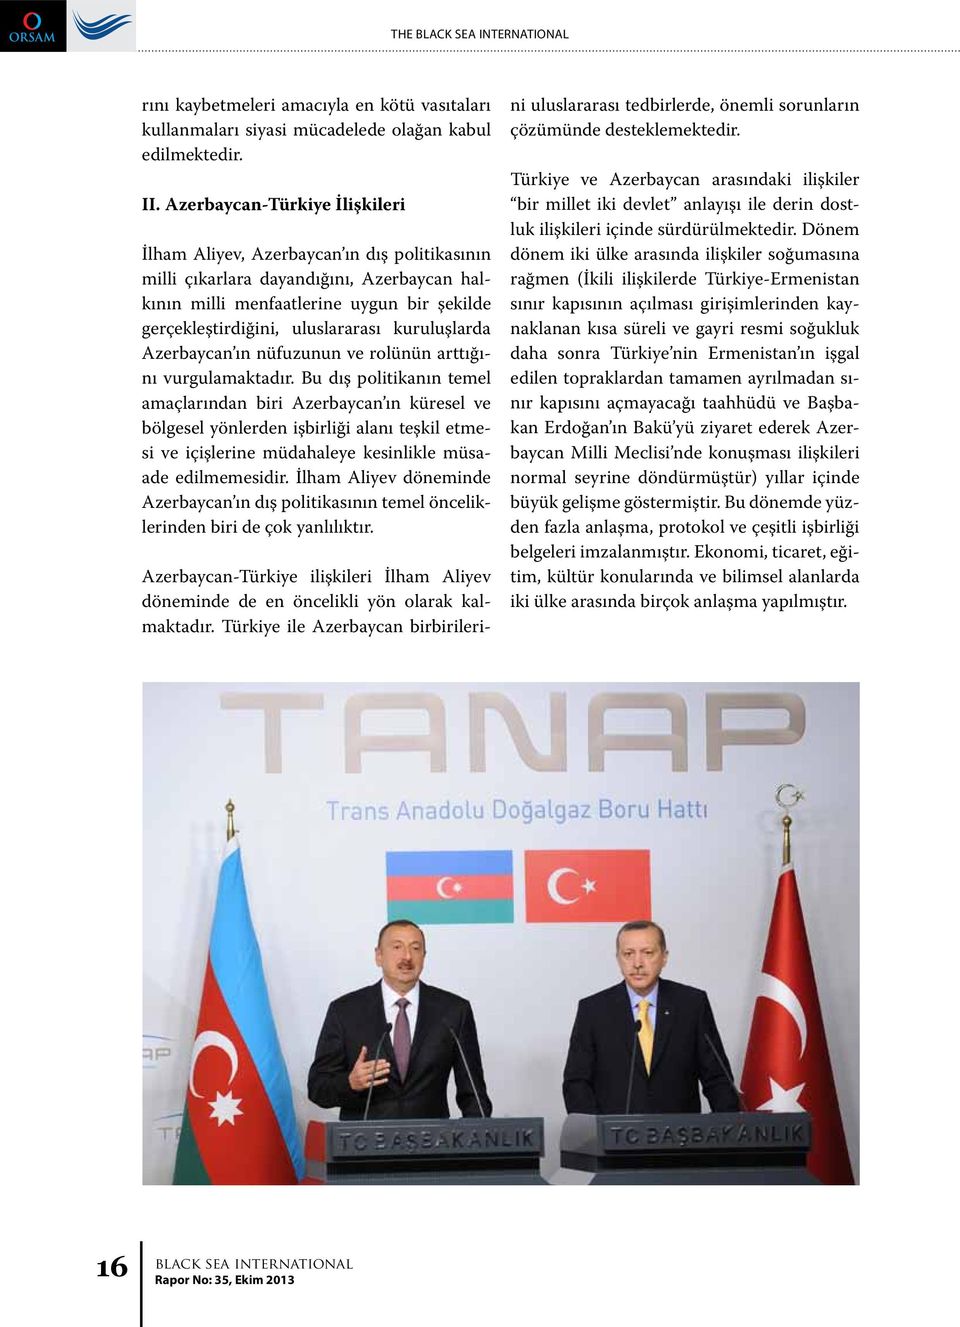 kuruluşlarda Azerbaycan ın nüfuzunun ve rolünün arttığını vurgulamaktadır.